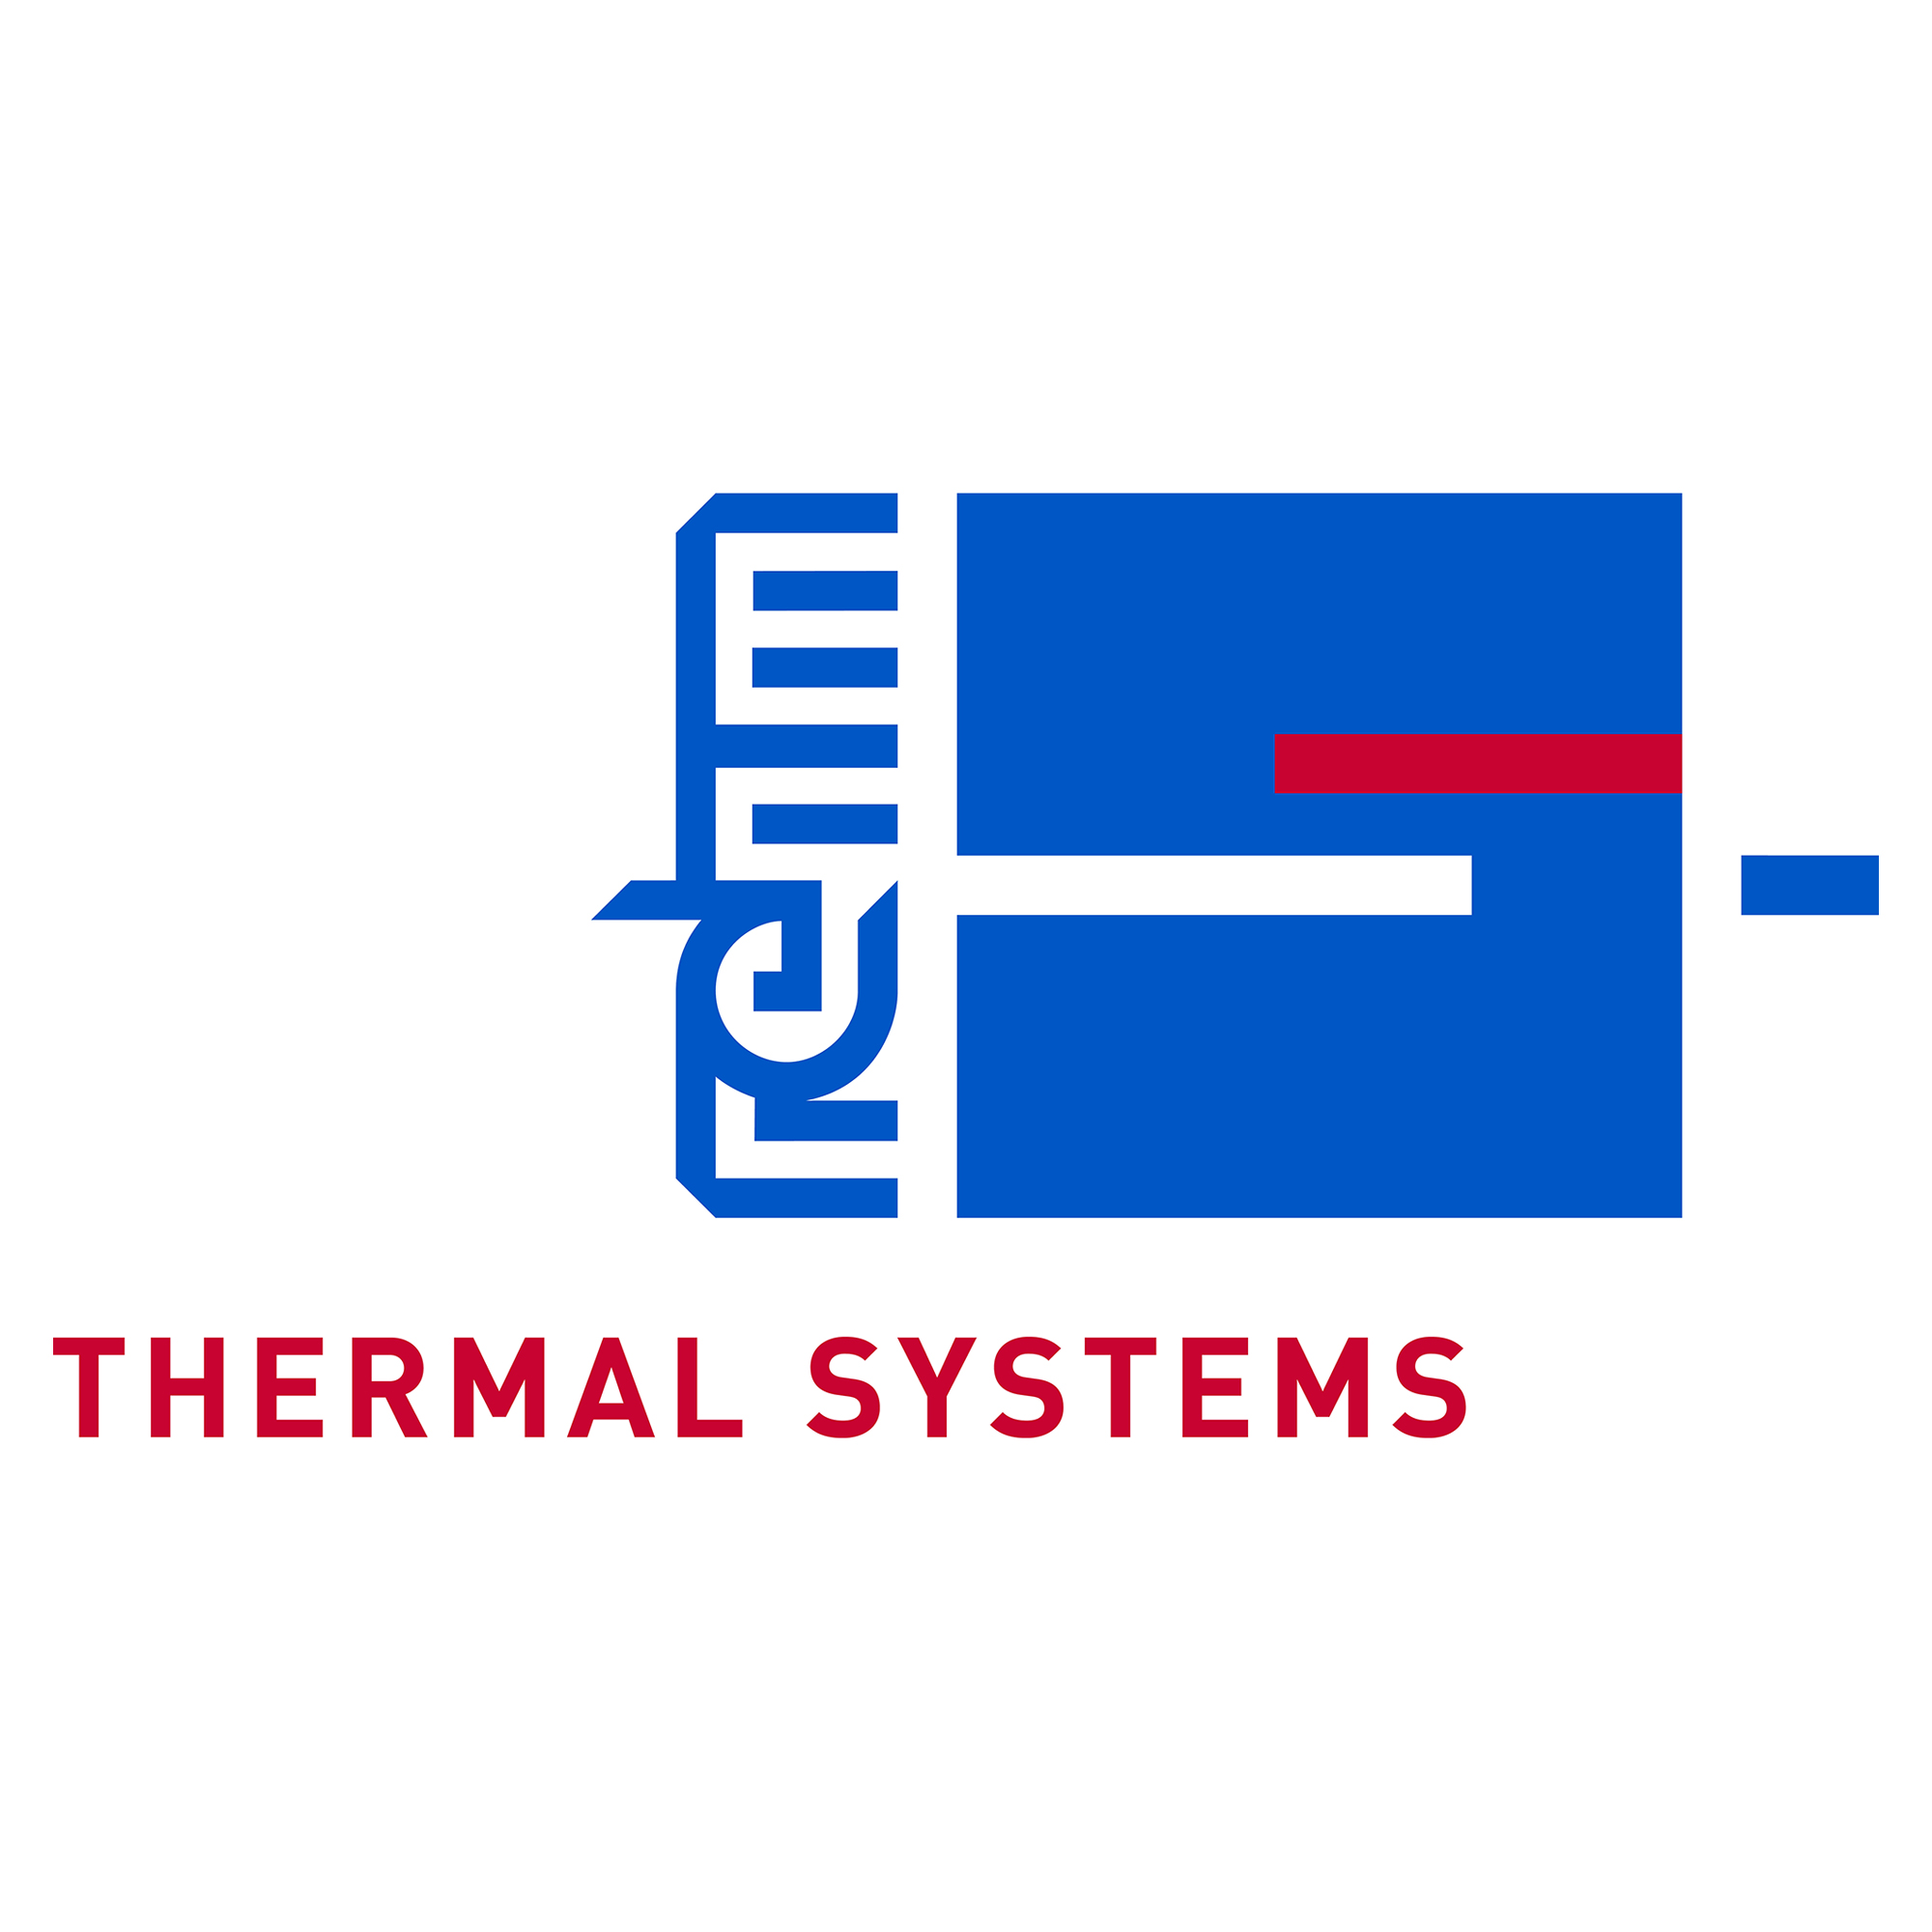 锐德(Rehm)对流焊接系统的氮气气氛技术可防止焊接缺陷